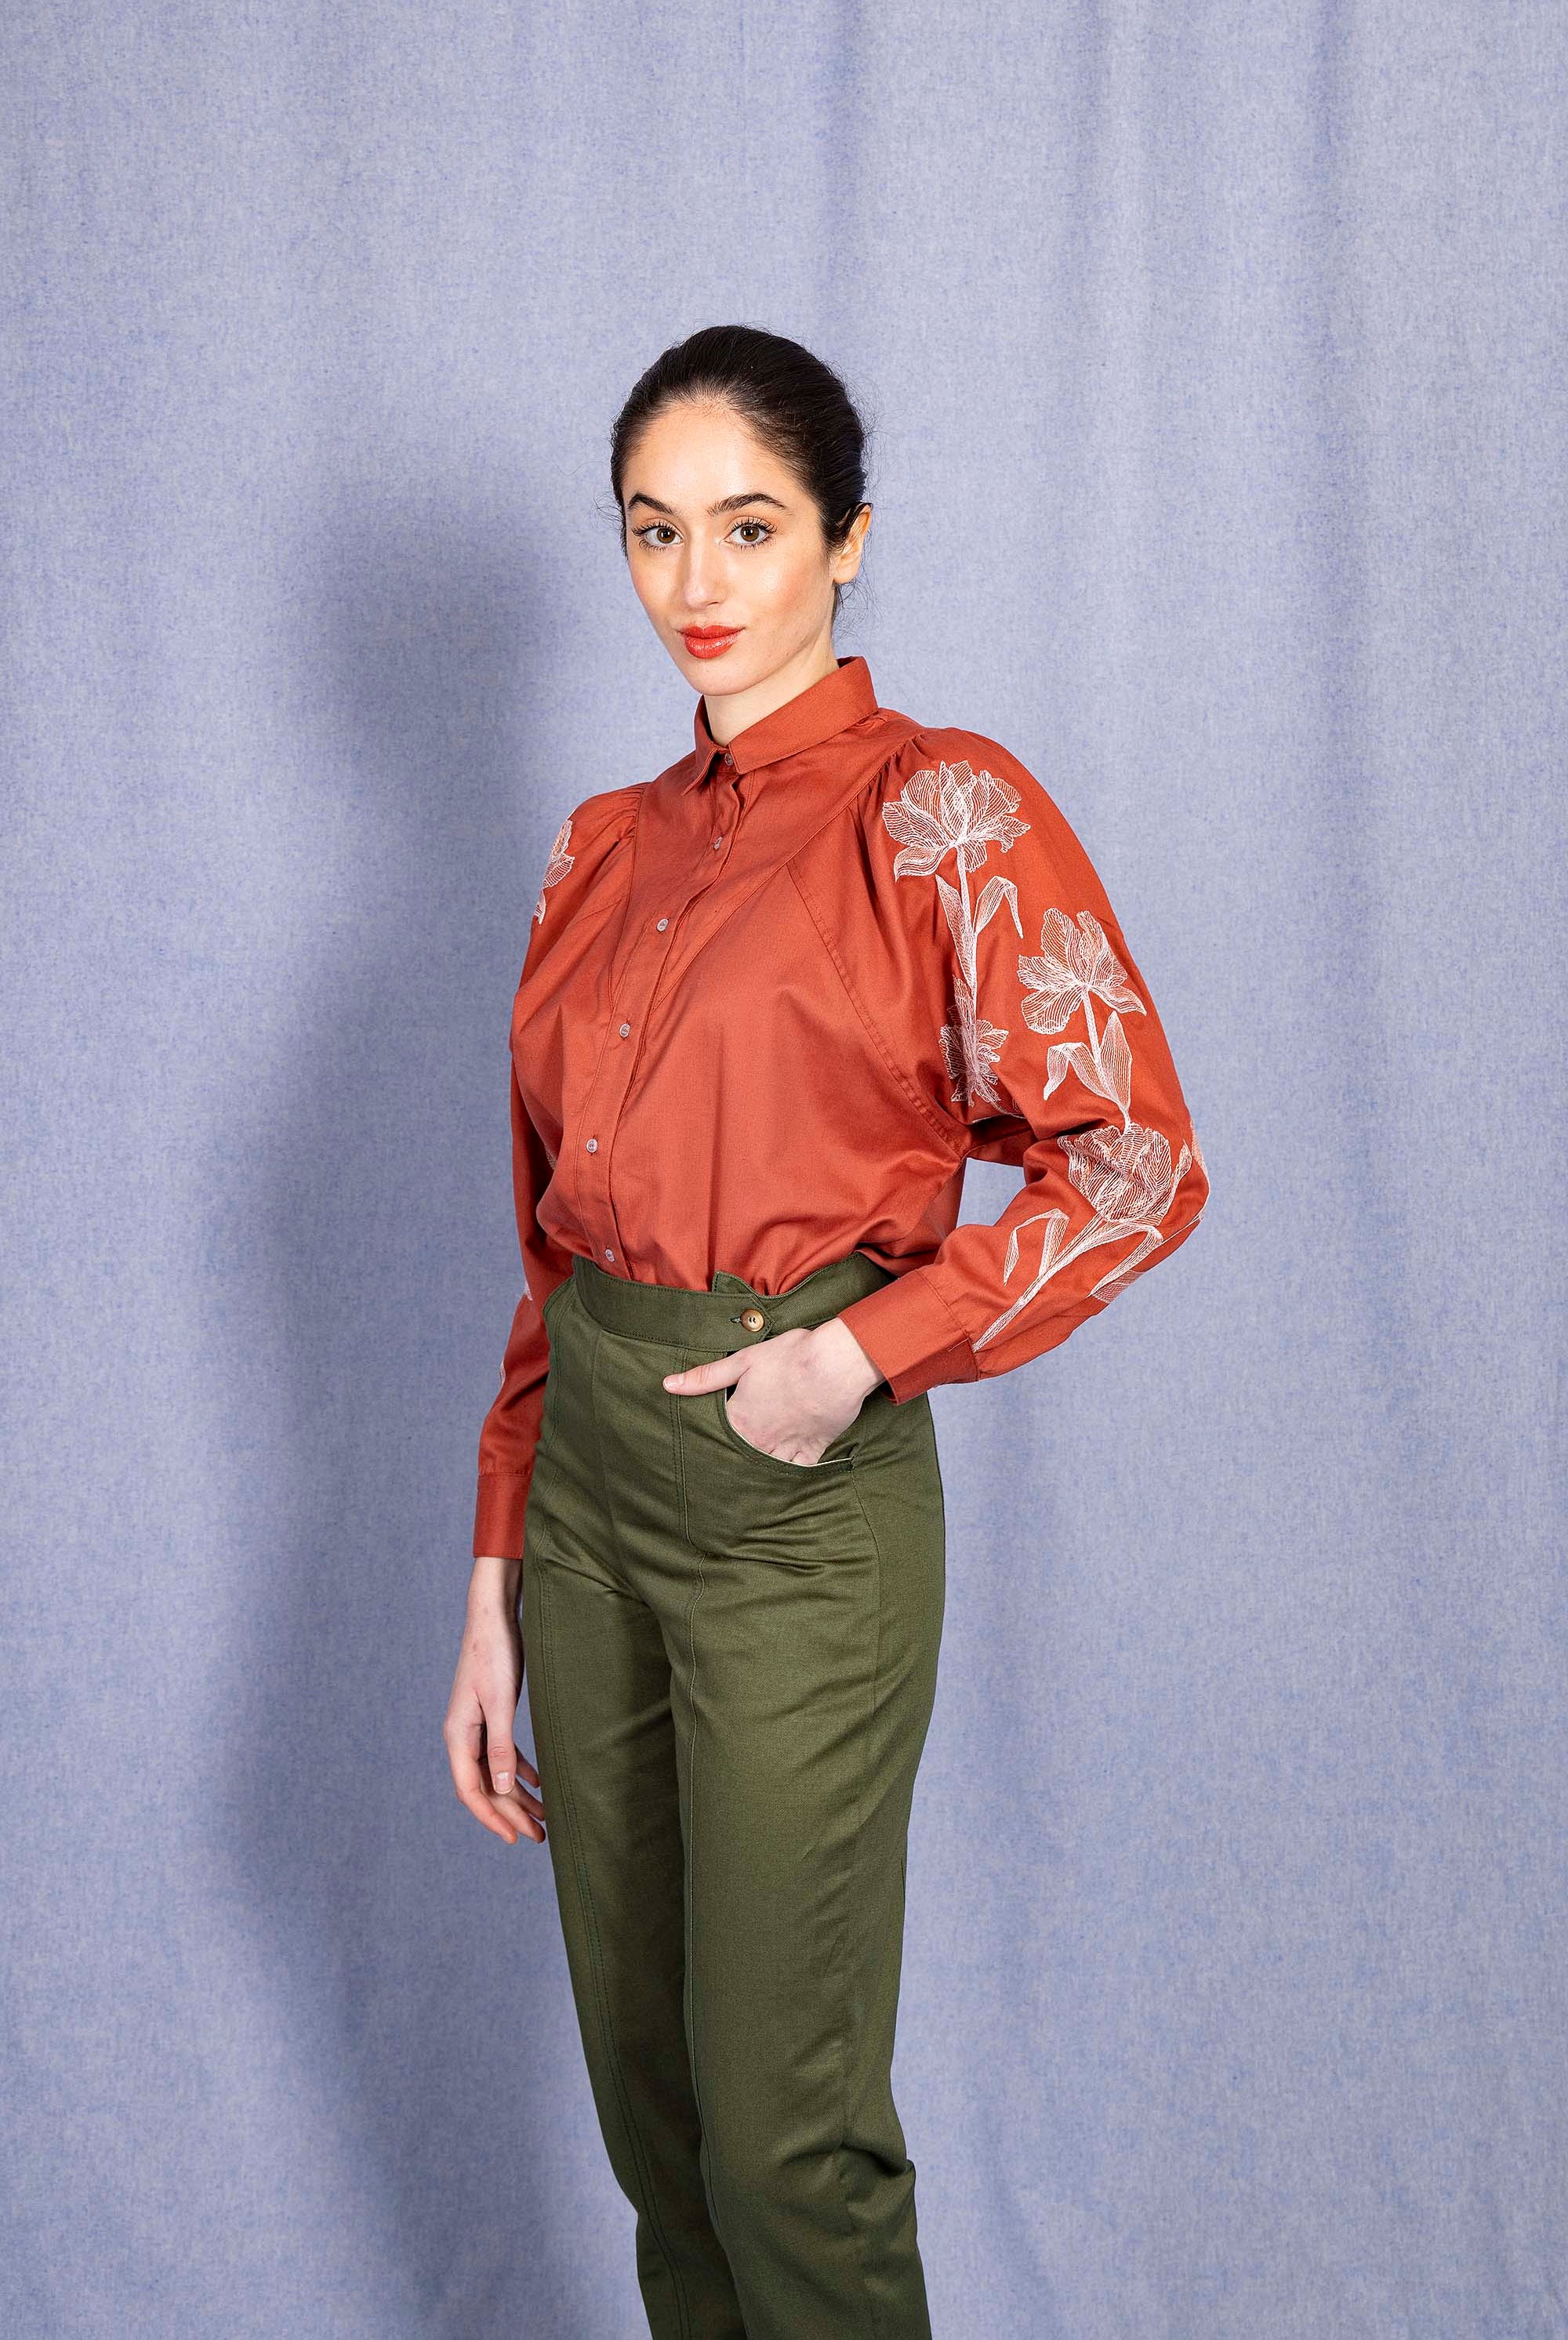 Chemise Donata Flores Rouge Brique classique intemporelle, la chemise dessine la silhouette